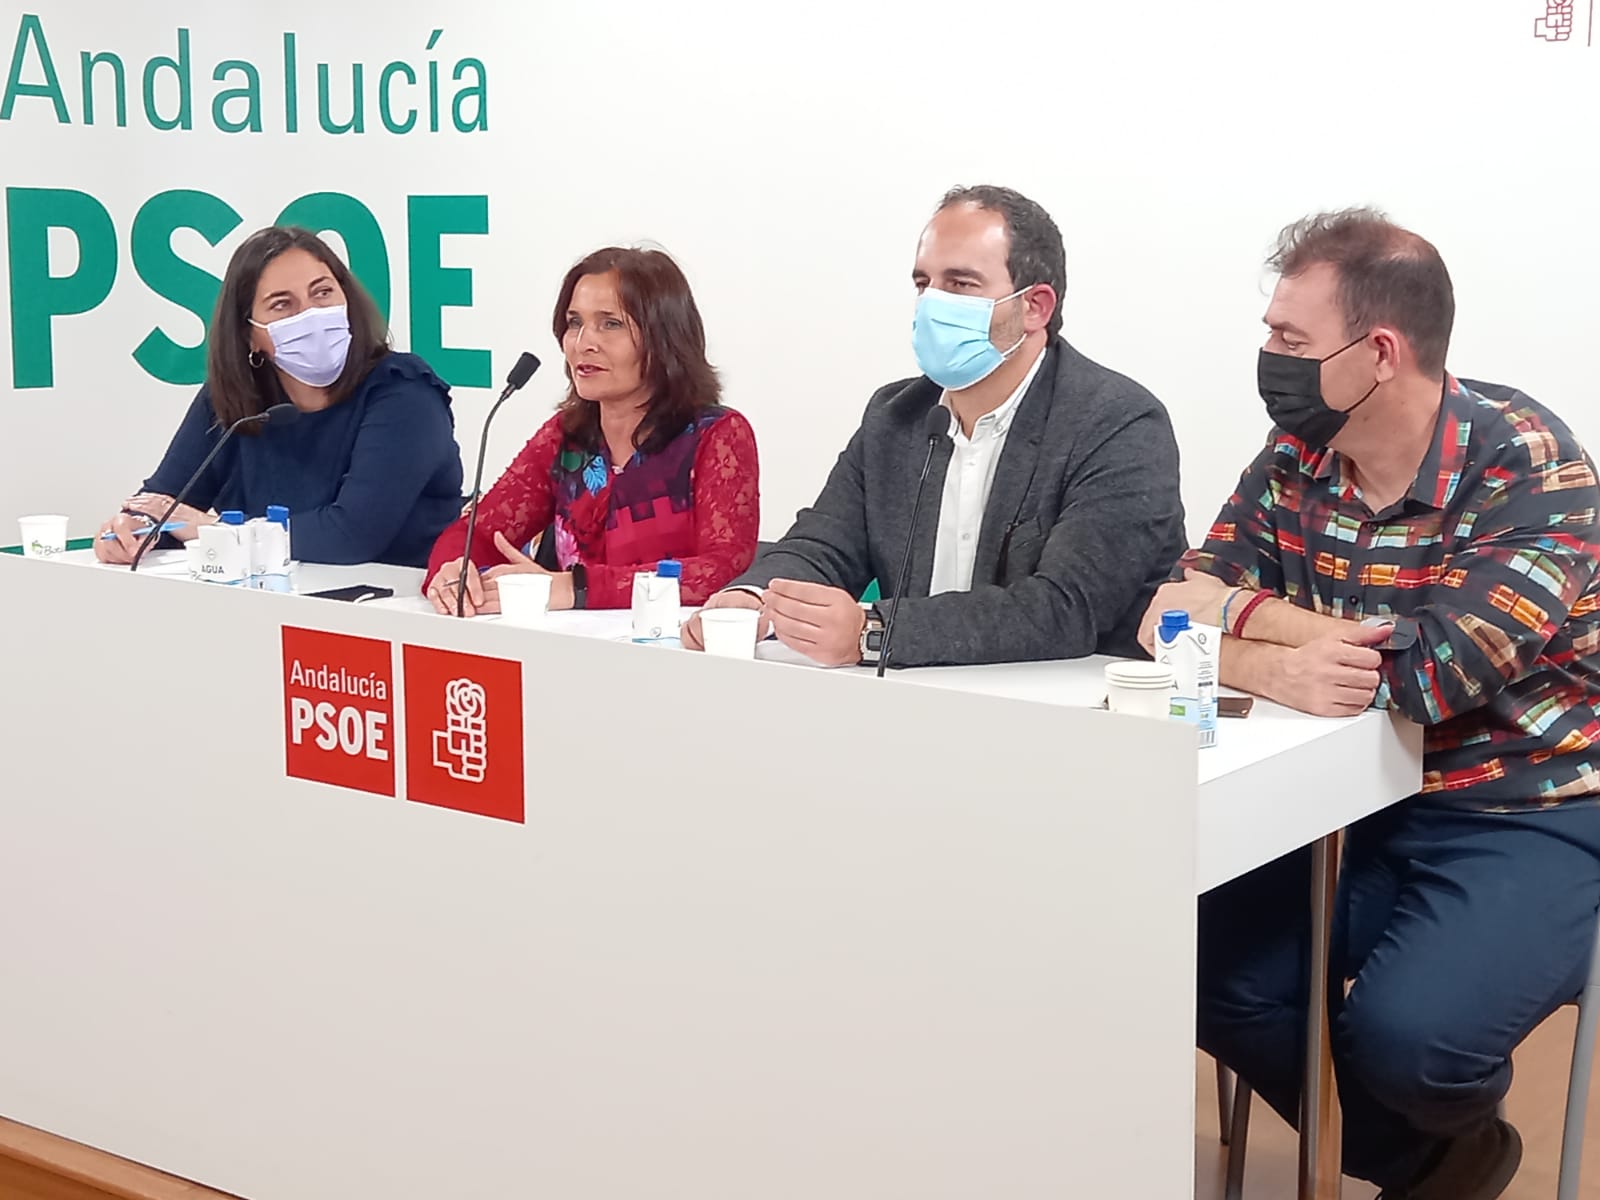 El PSOE destaca el “esfuerzo” del Gobierno de España por impulsar la educación en Andalucía con una inversión de 950 millones este año